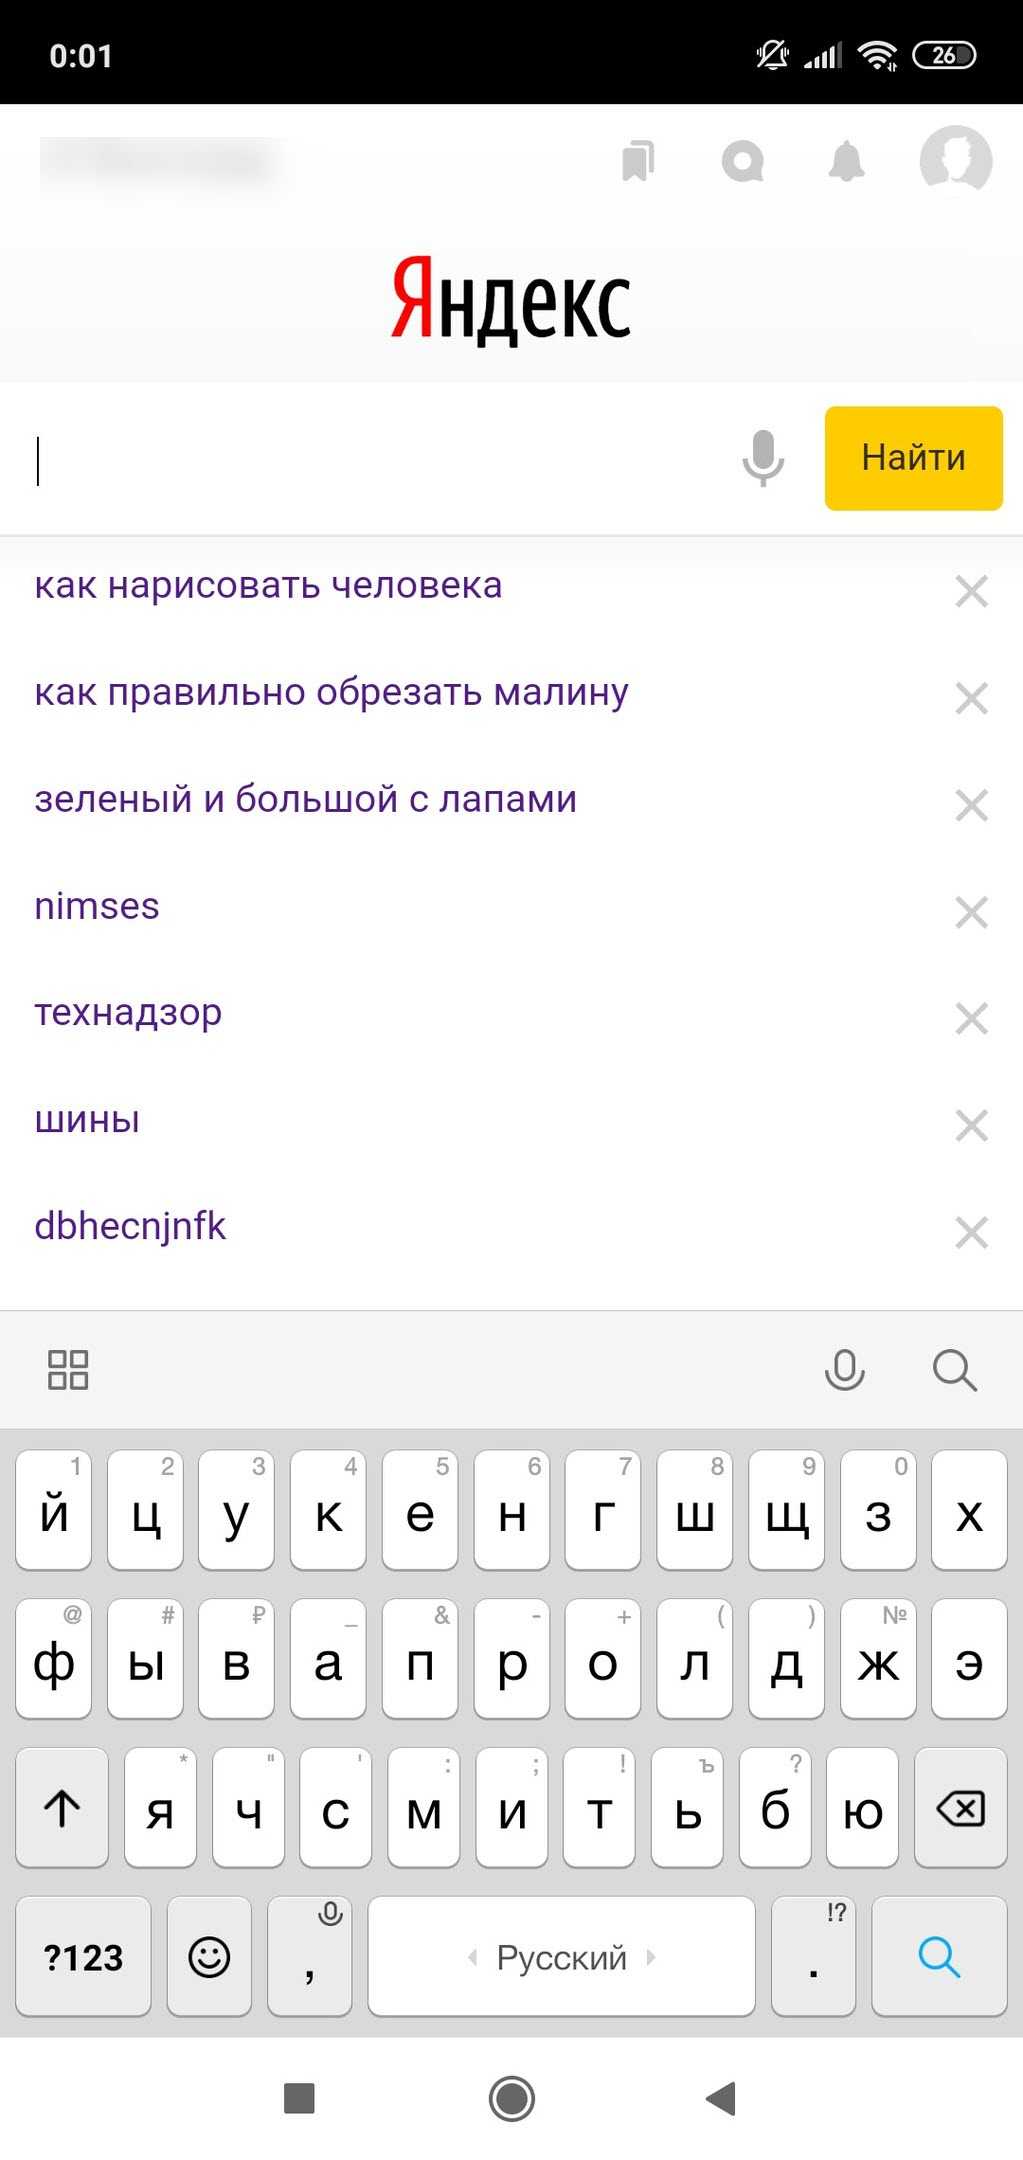 Как отключить историю в яндексе на телефоне. Удалить историю поиска в Яндексе на телефоне. Как очистить историю запросов в Яндексе на телефоне. Очистка истории в Яндексе на телефоне. Как удалить запросы в Яндексе на смартфоне.